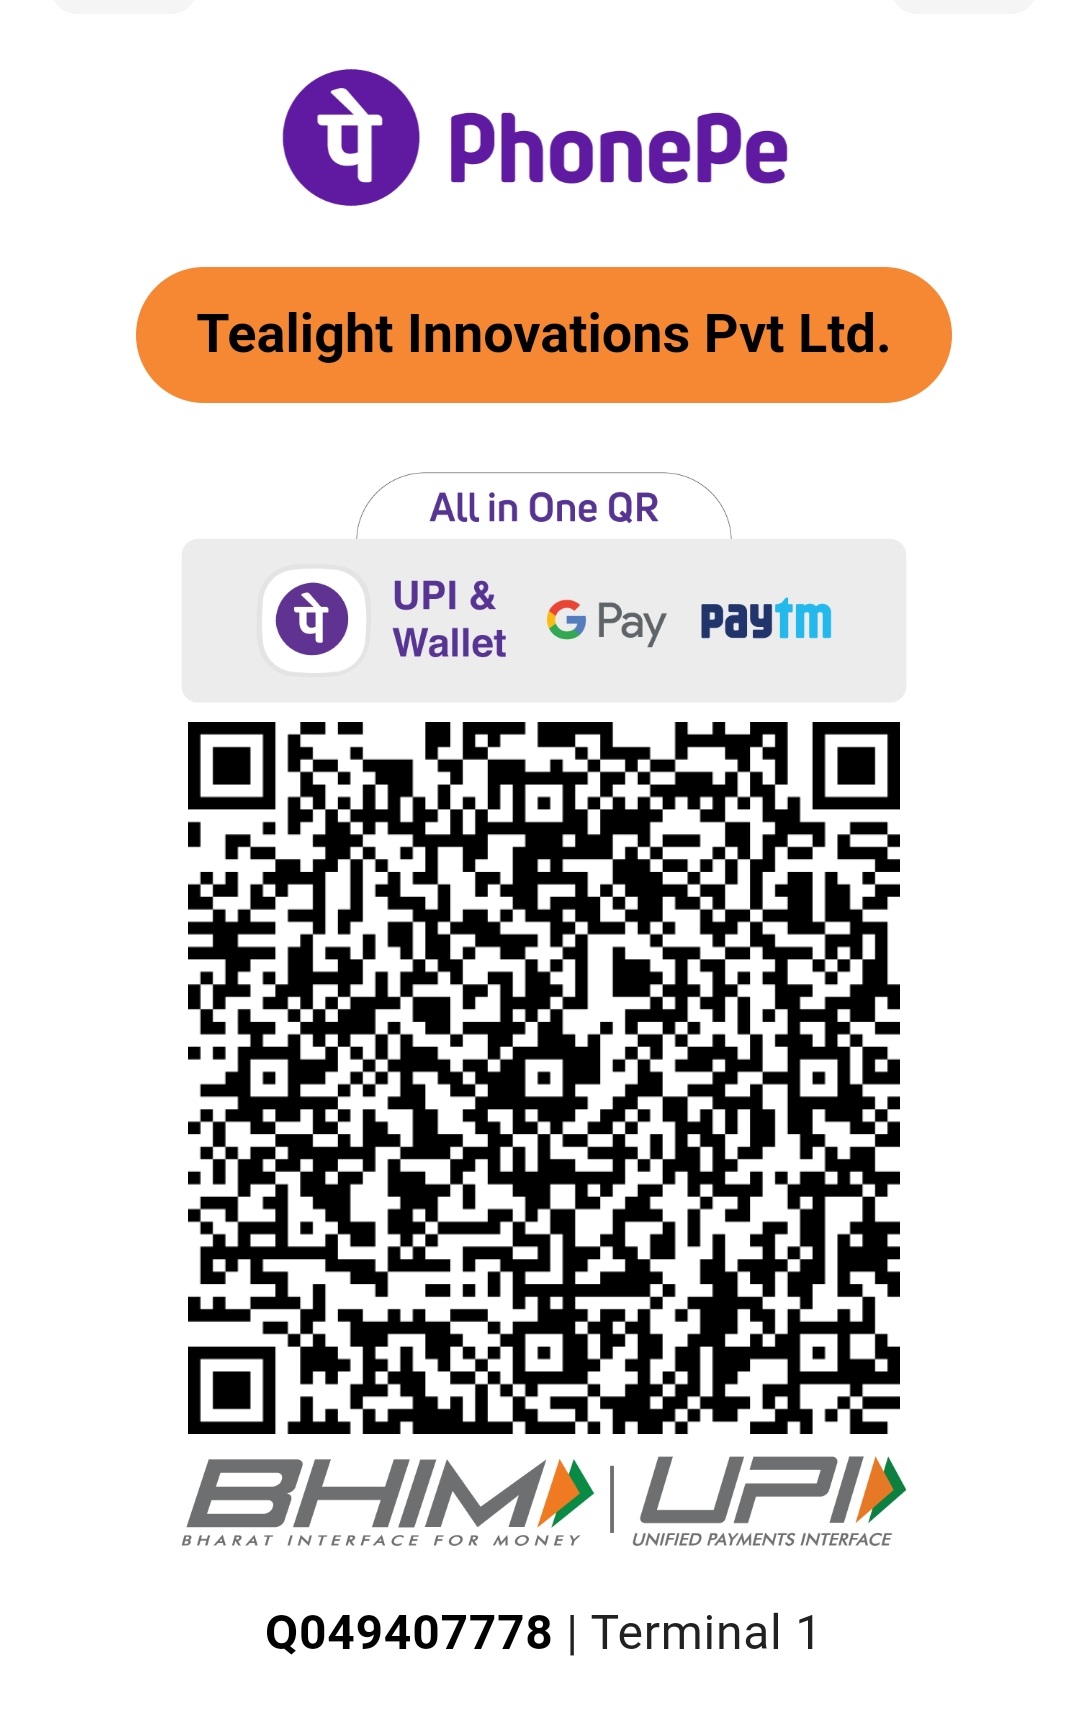 Tealight Innovations Pvt Ltd